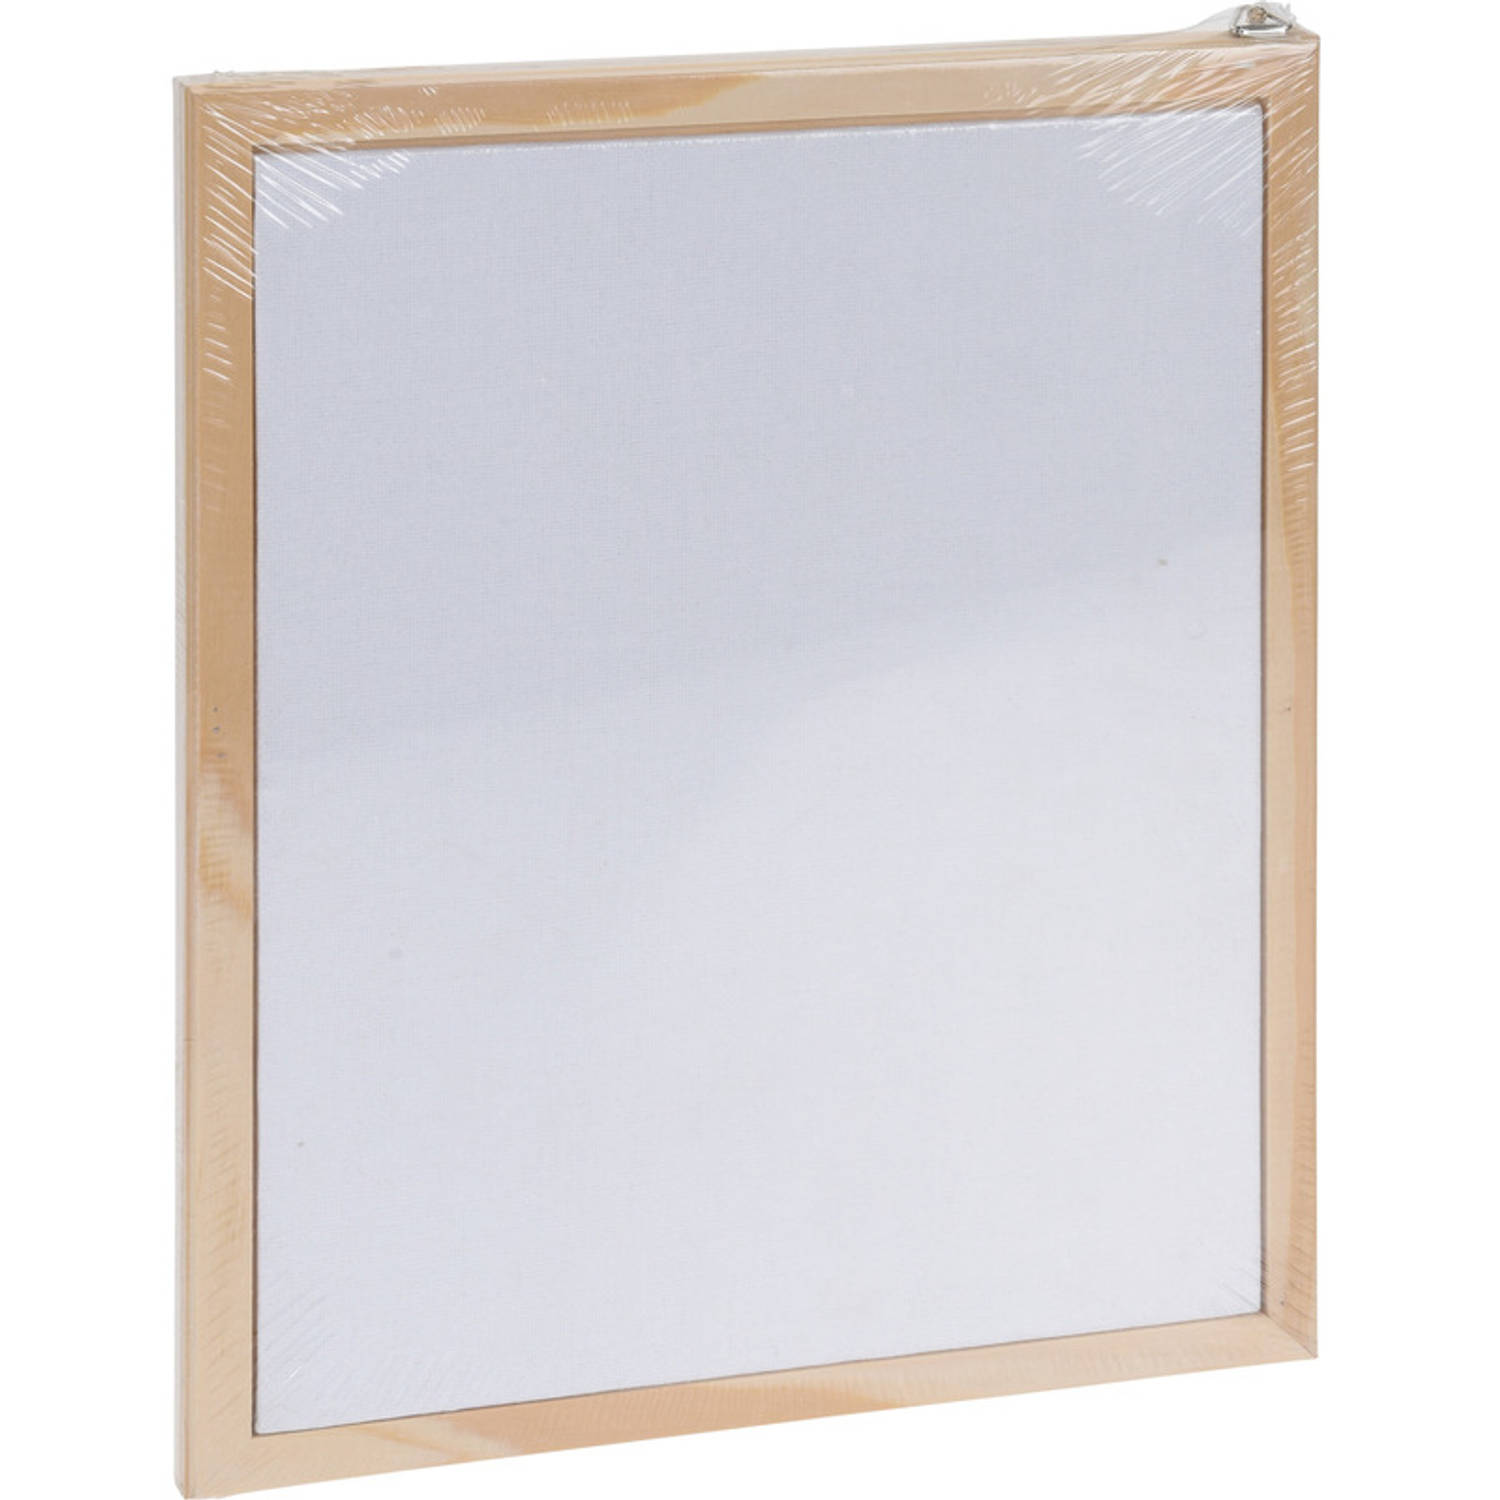 Voorstad professioneel driehoek 1x Canvas/schildersdoeken 24x30 cm met houten lijst hobbymateriaal -  Schildersdoeken | Blokker